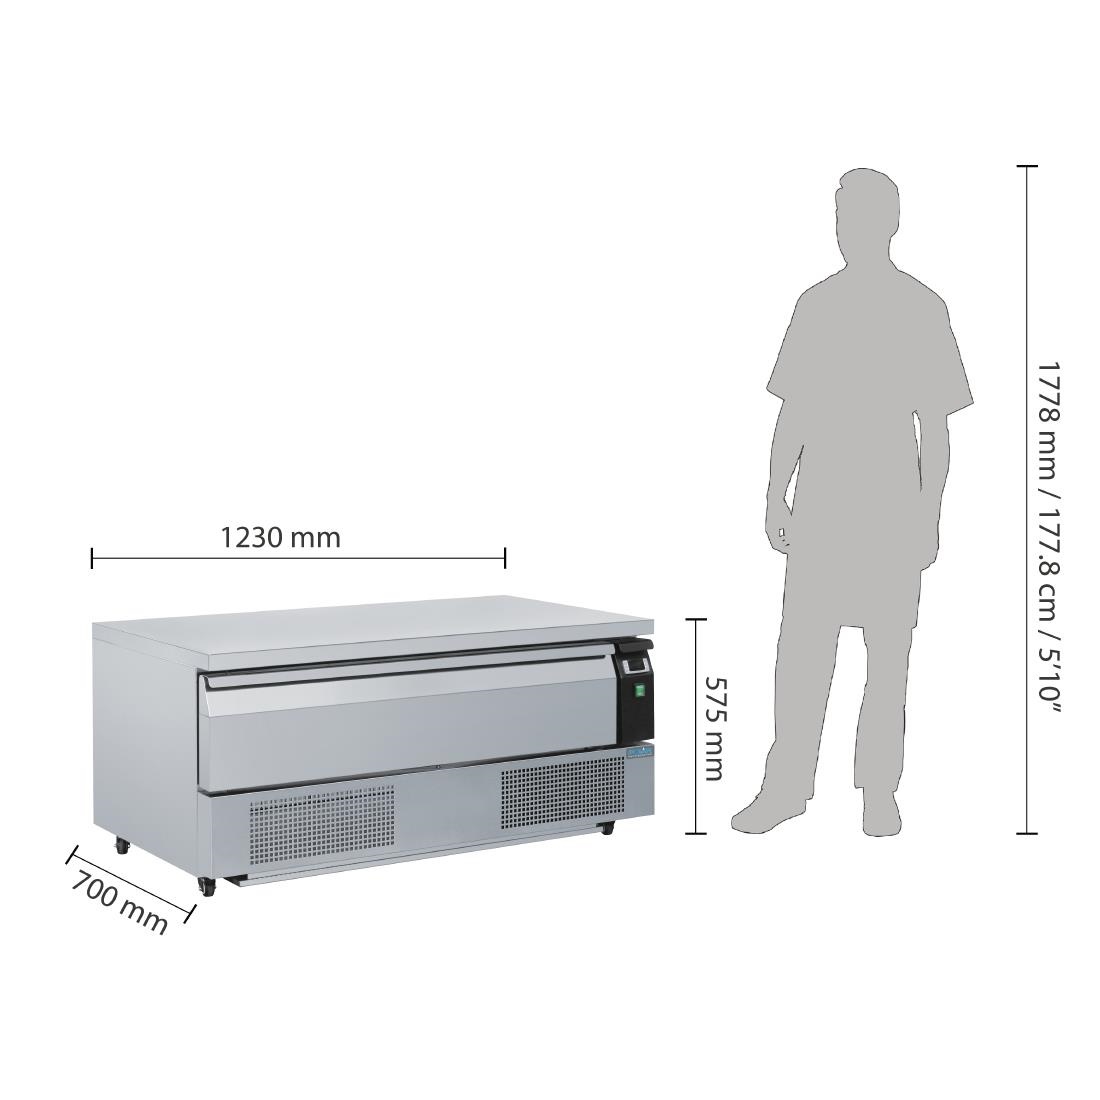 U-Serie Kühl- oder Gefrierschrank | Unterbau | 1 Schublade 3x GN1/1 | 1230x700x(h)605mm